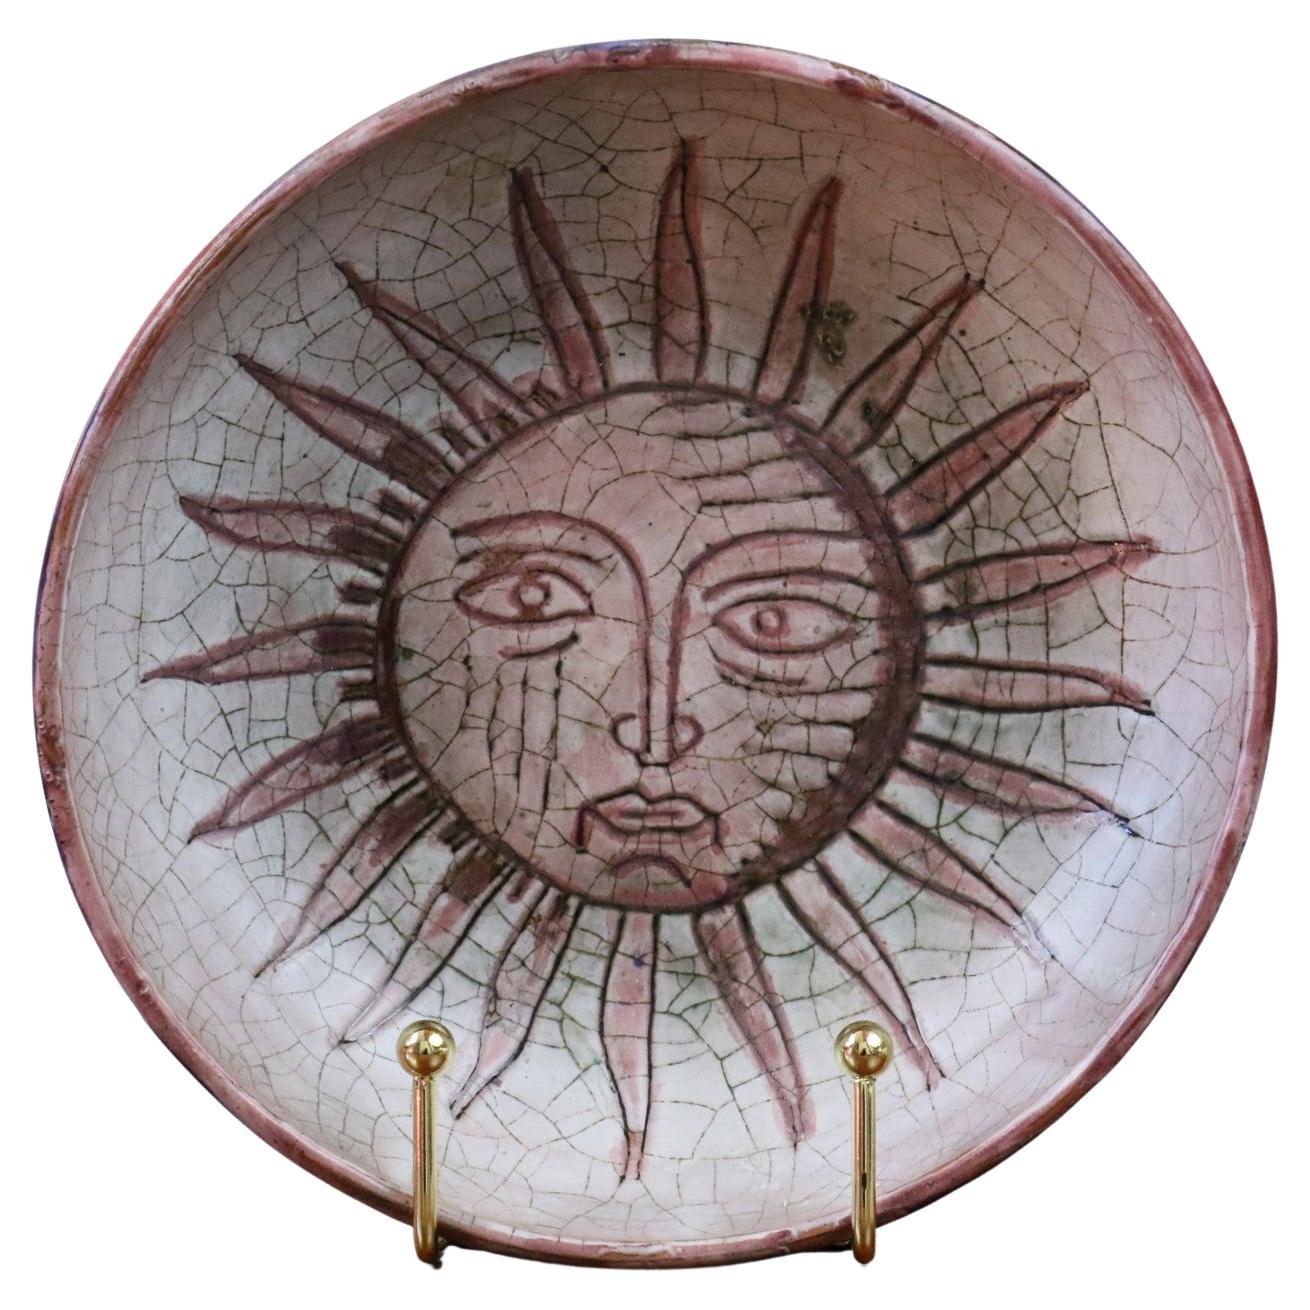 Bol en céramique émaillée décoré d'un soleil par Ccile Dein. Signé. Circa 1970's.
Signé en bas. La pièce est en très bon état.

Née en 1929, Ccile Dein s'est très tôt consacrée à la façonnage de l'argile et a travaillé dans la tradition du potier